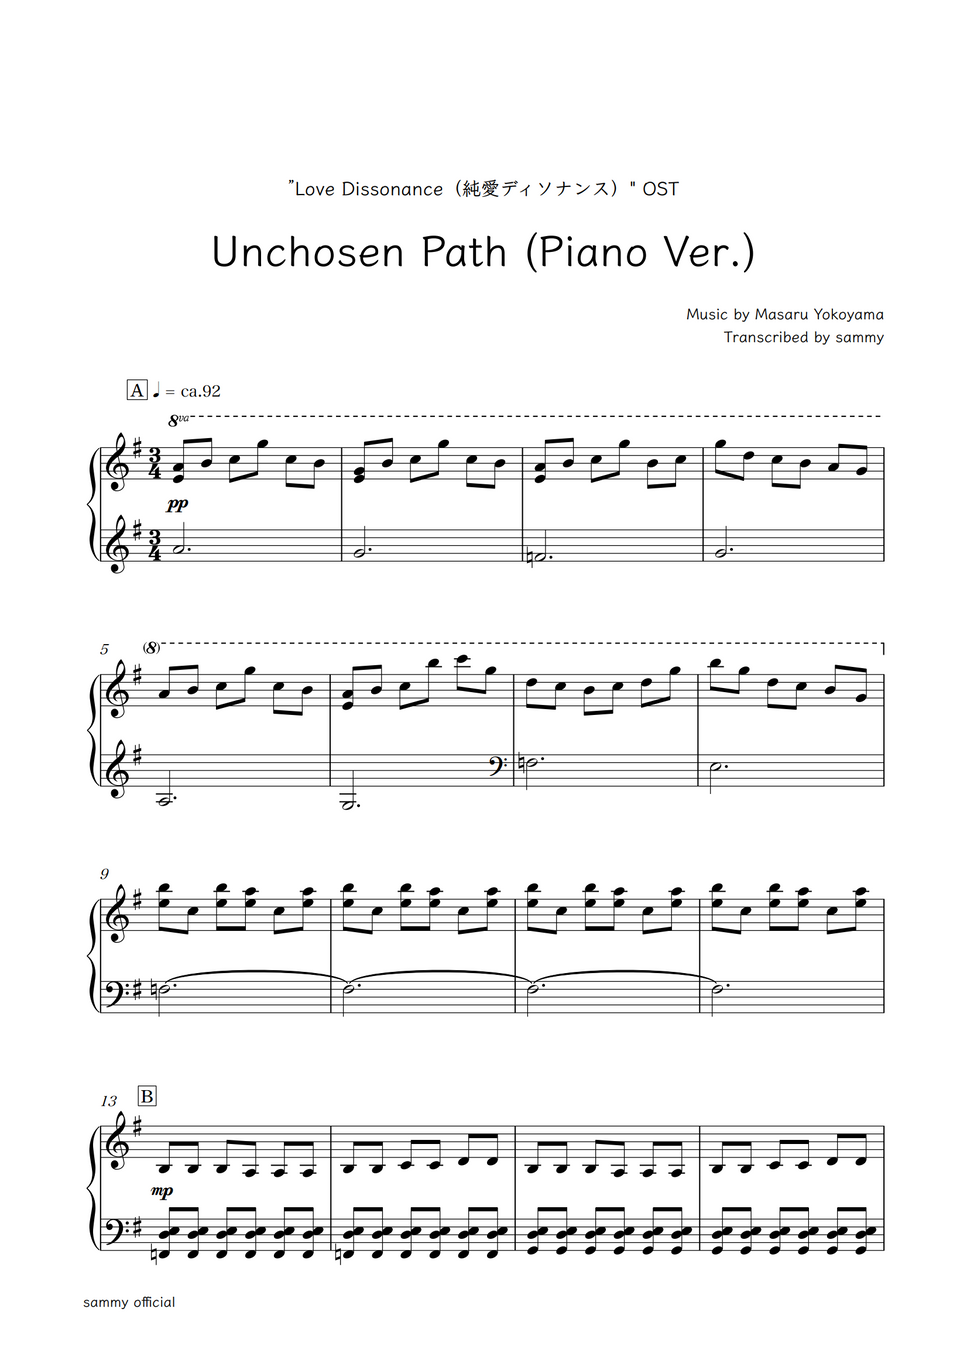 "Love Dissonance (純愛ディソナンス)"OST - Unchosen Path (Piano Ver.) by sammy